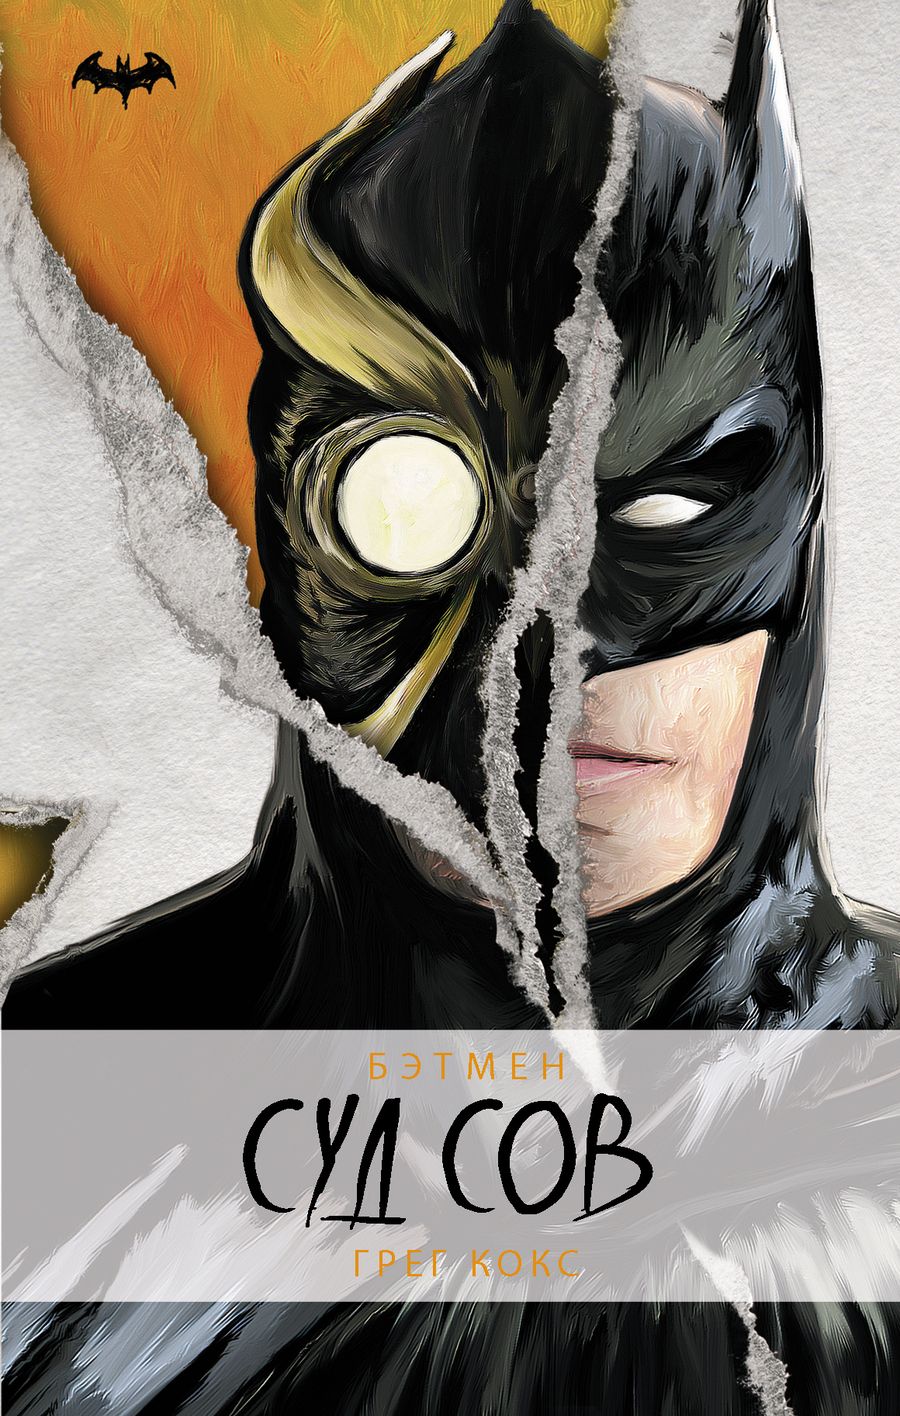 Обложка книги "Грег Кокс: Бэтмен. Суд Сов"